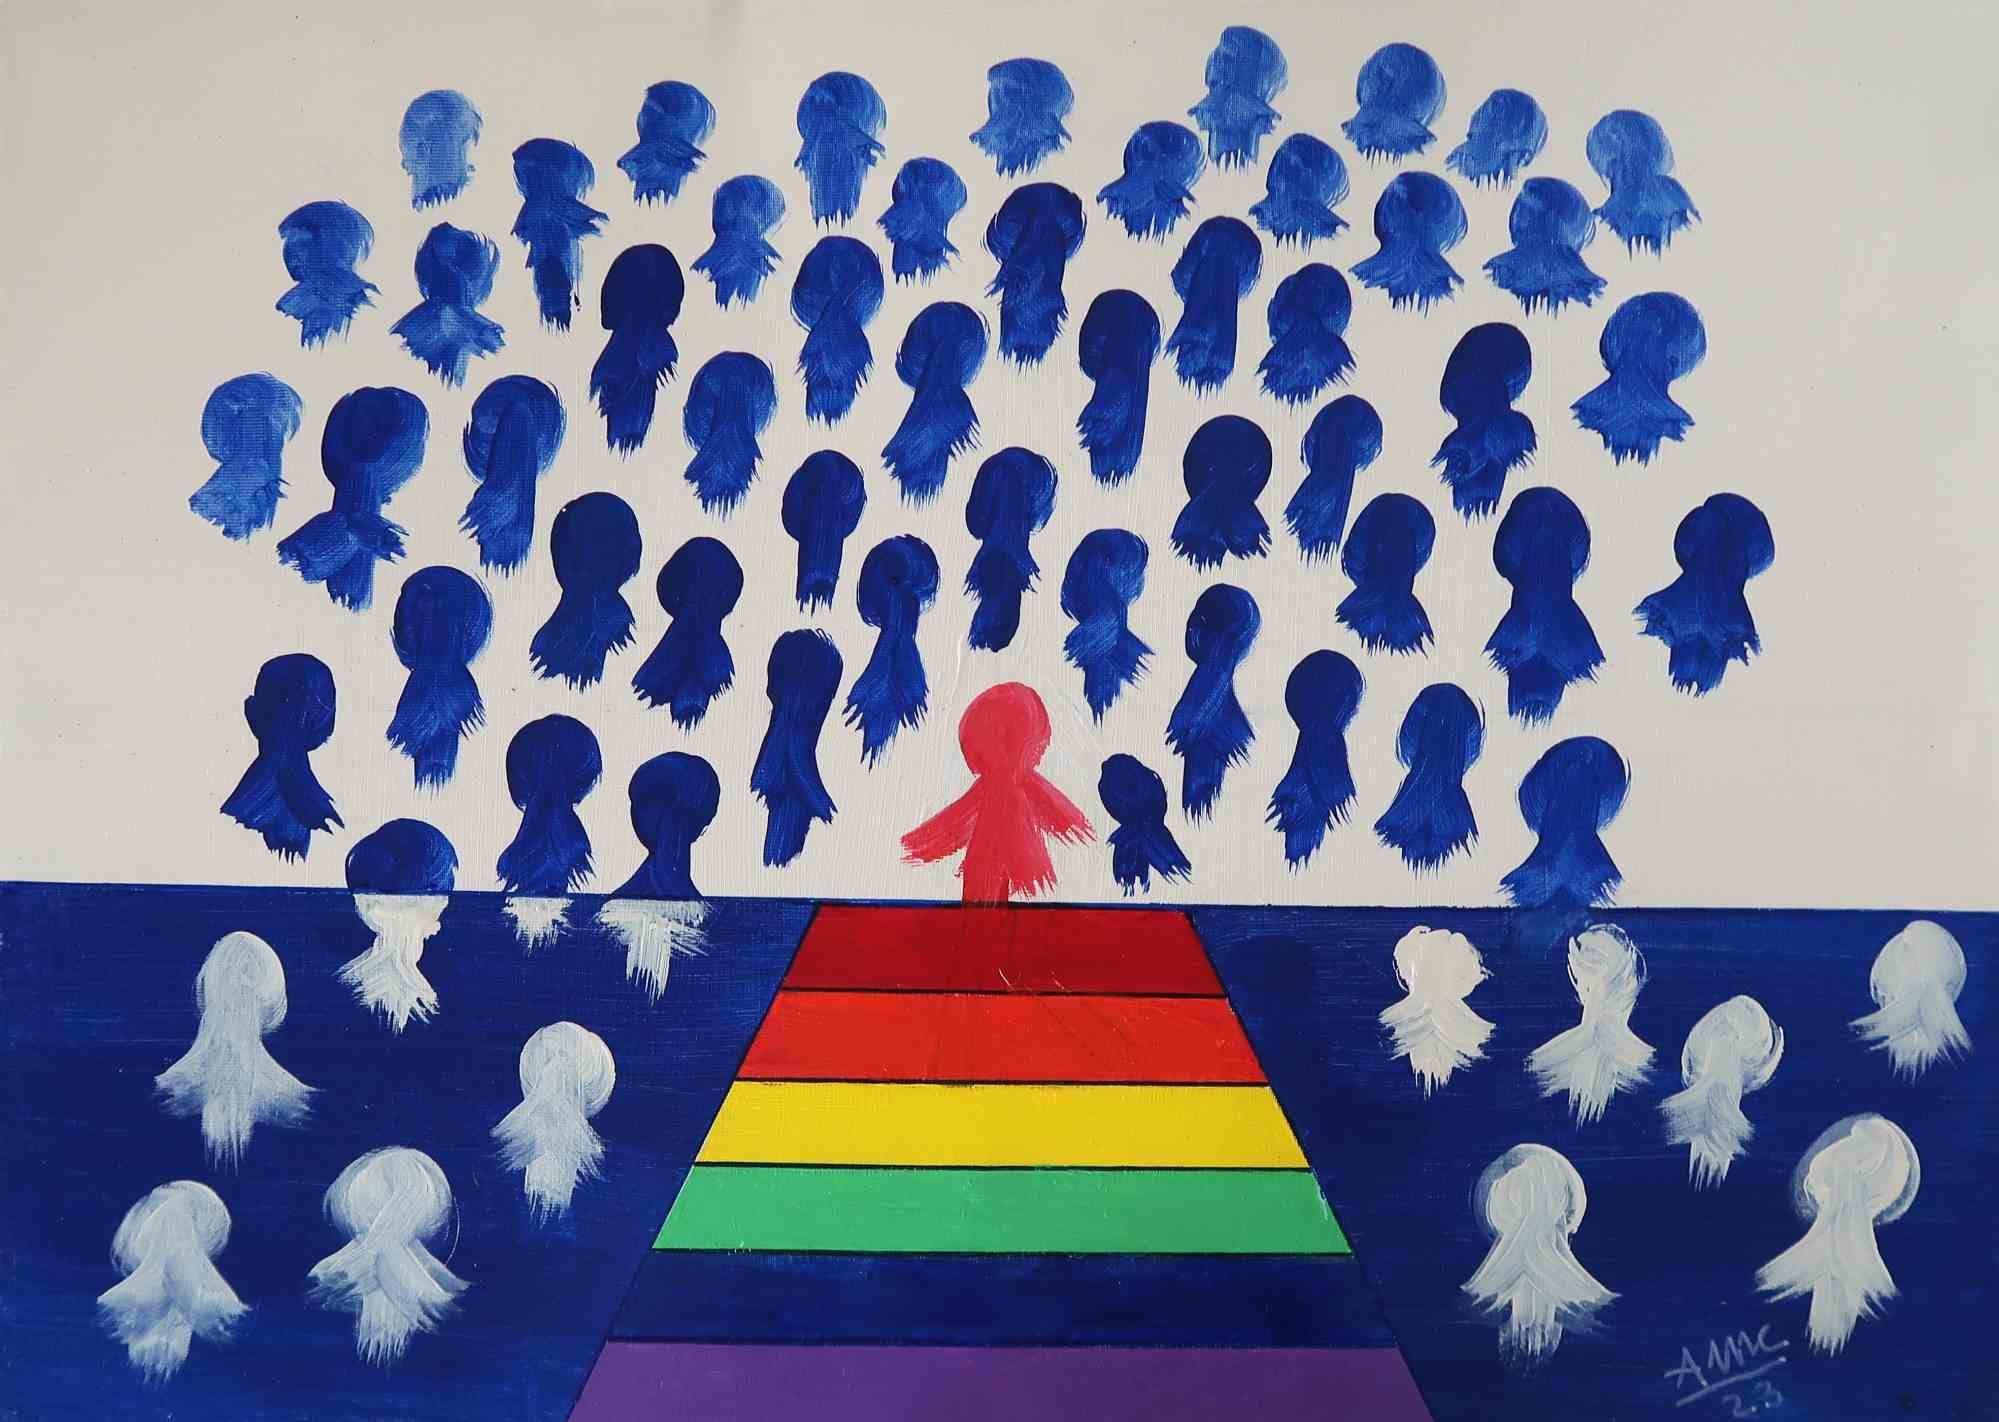 Vers le salut est une peinture fascinante de l'artiste italienne Anna Maria Caboni.

Dans un lieu sans espace, au-delà de la réalité, des fantômes anonymes sont attirés vers le seul indice d'espace : les couleurs du drapeau LGBT. Elle pourrait leur